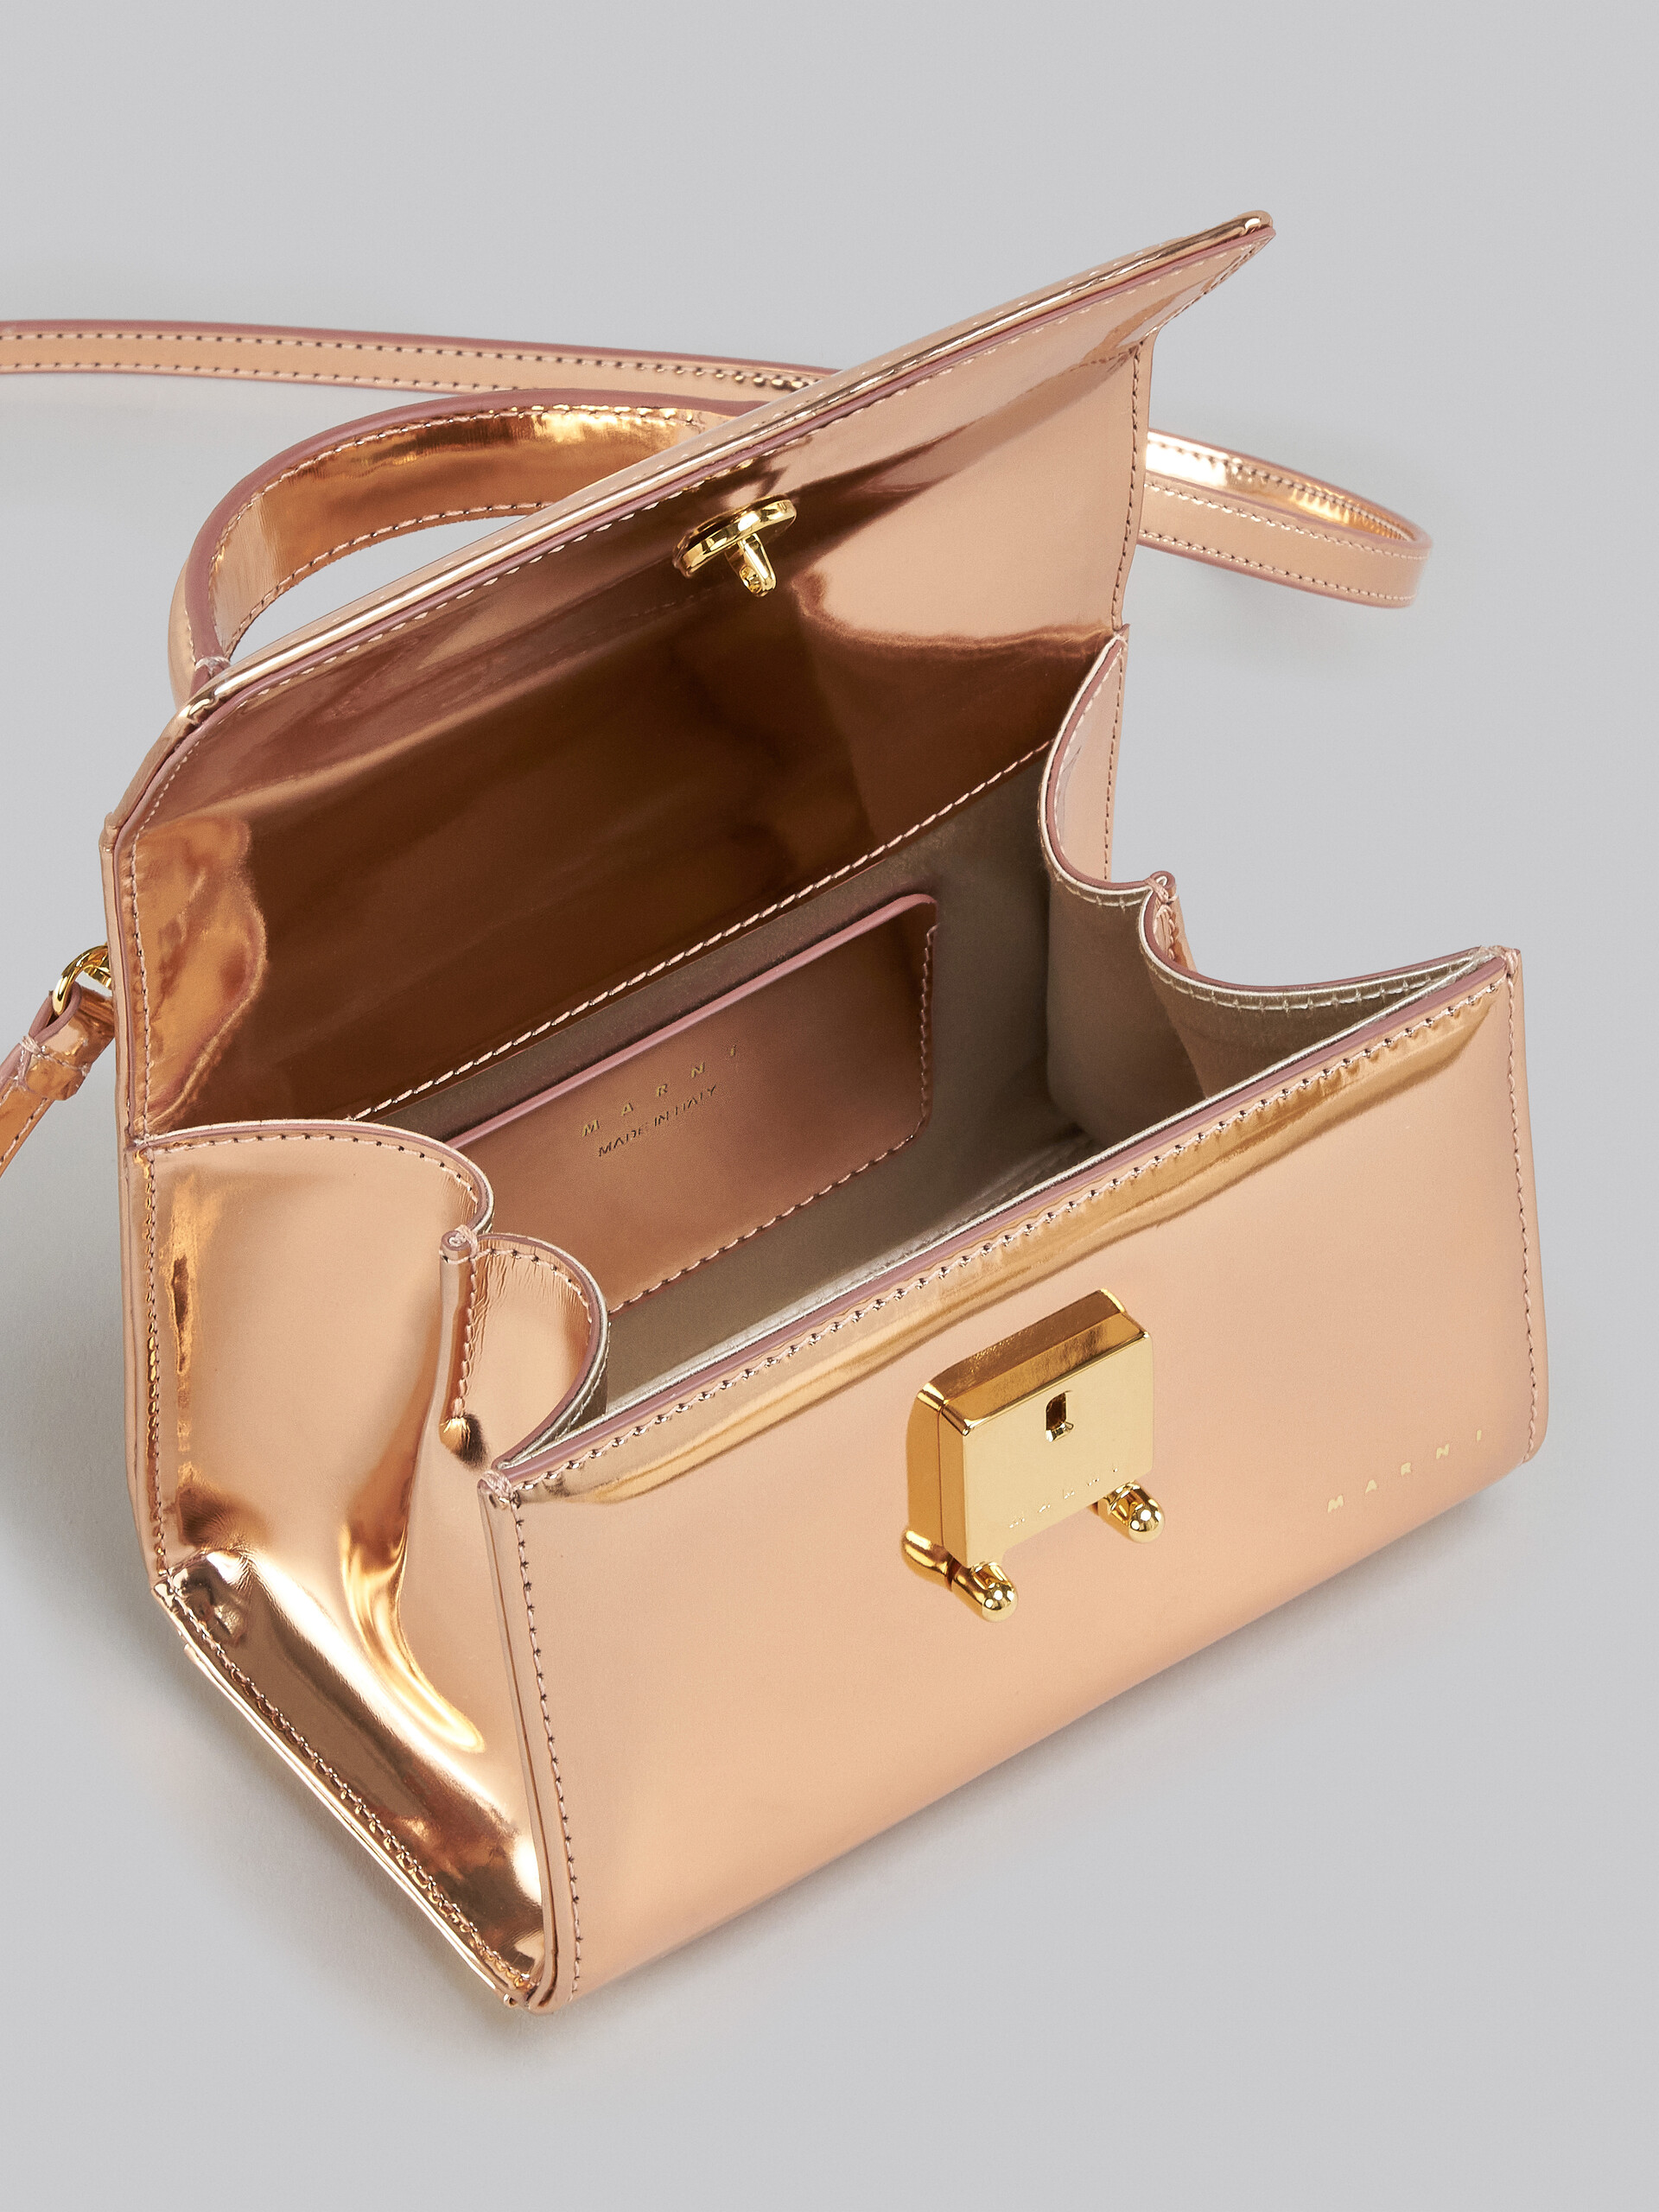 Relativity Bag Mini in pelle specchiata oro rosa - Borse a mano - Image 4